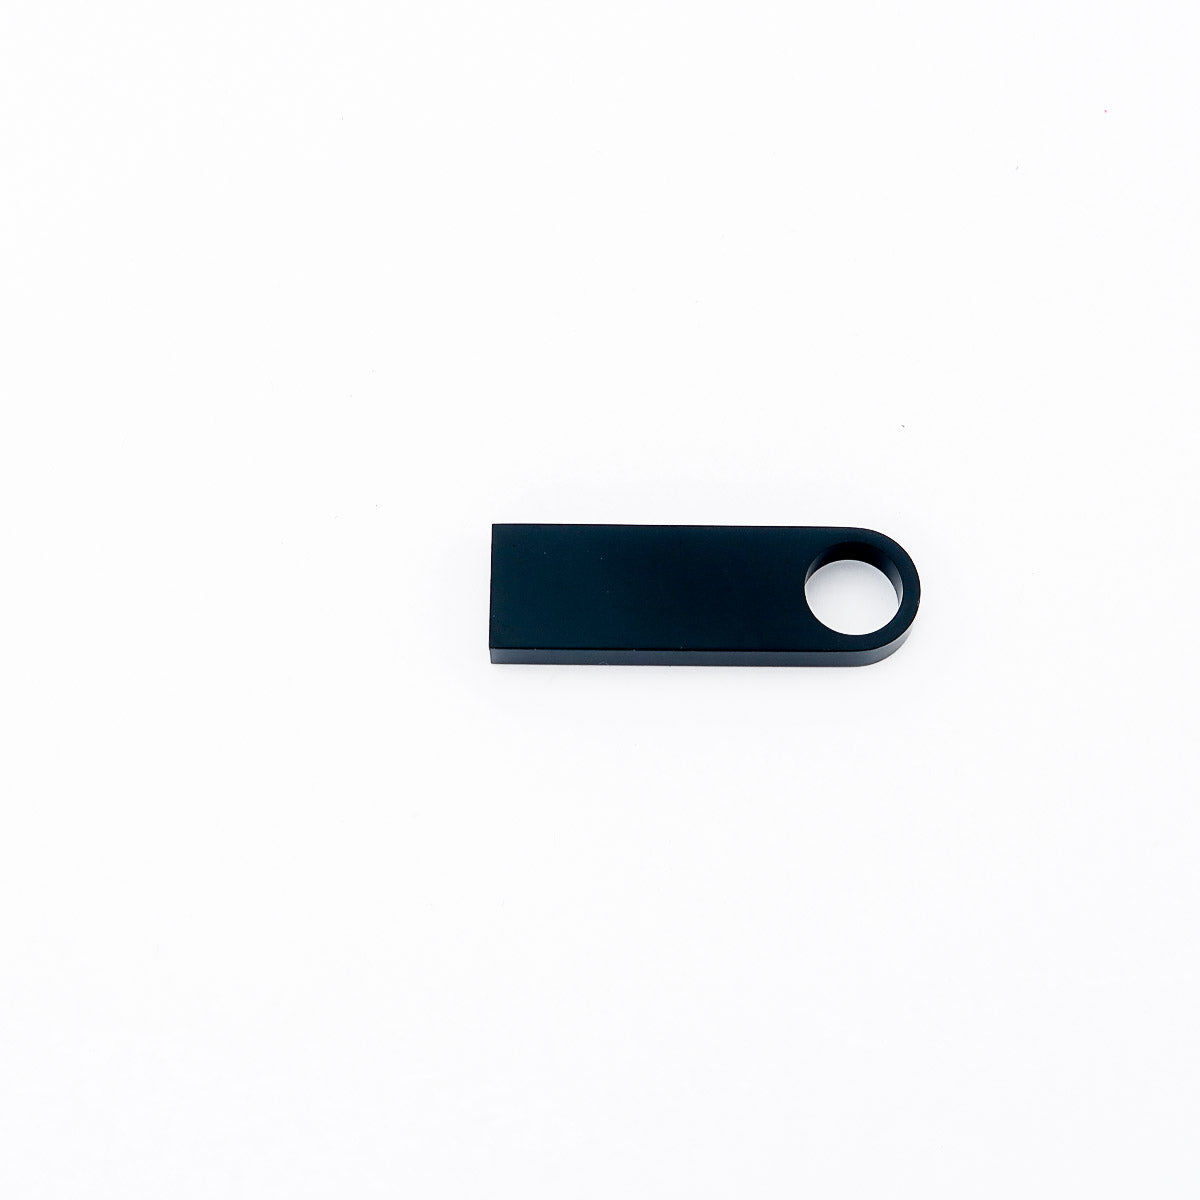 USB -stick personaliseret med gravering fra navn eller logo